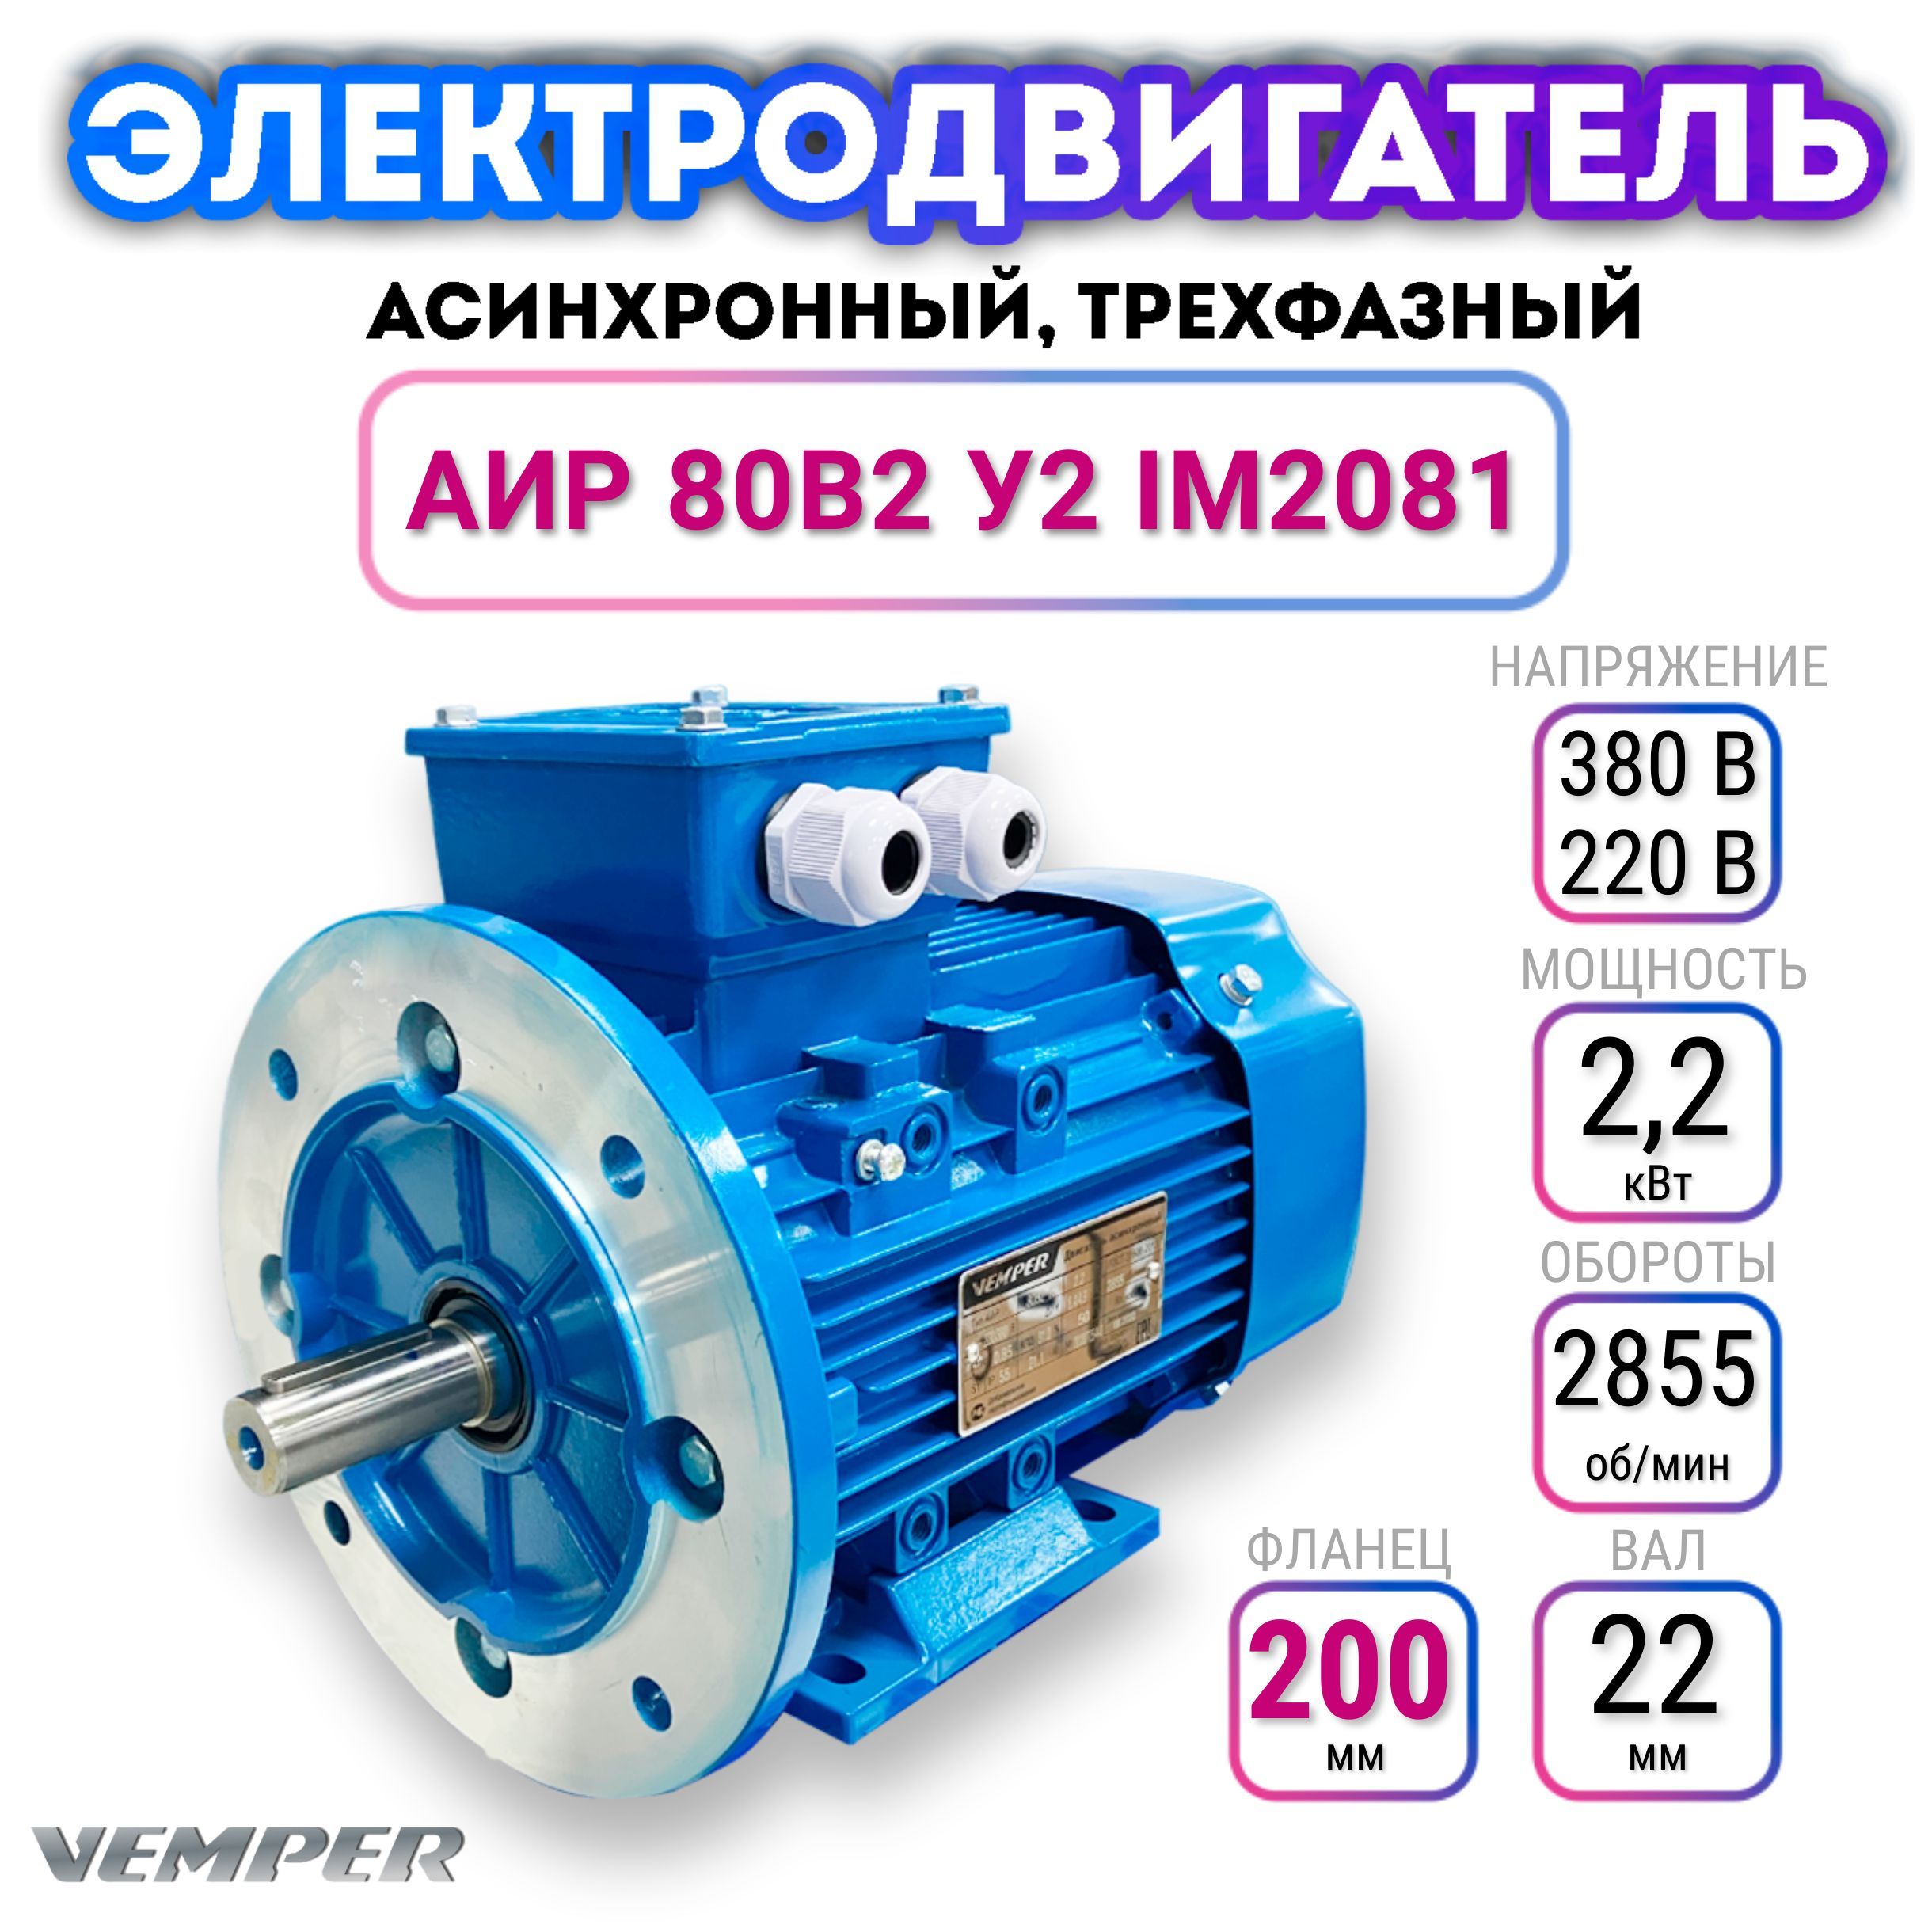 Асинхронные двигатели | Купить электродвигатель | Москва, Санкт-Петербург | Каталог с ценами